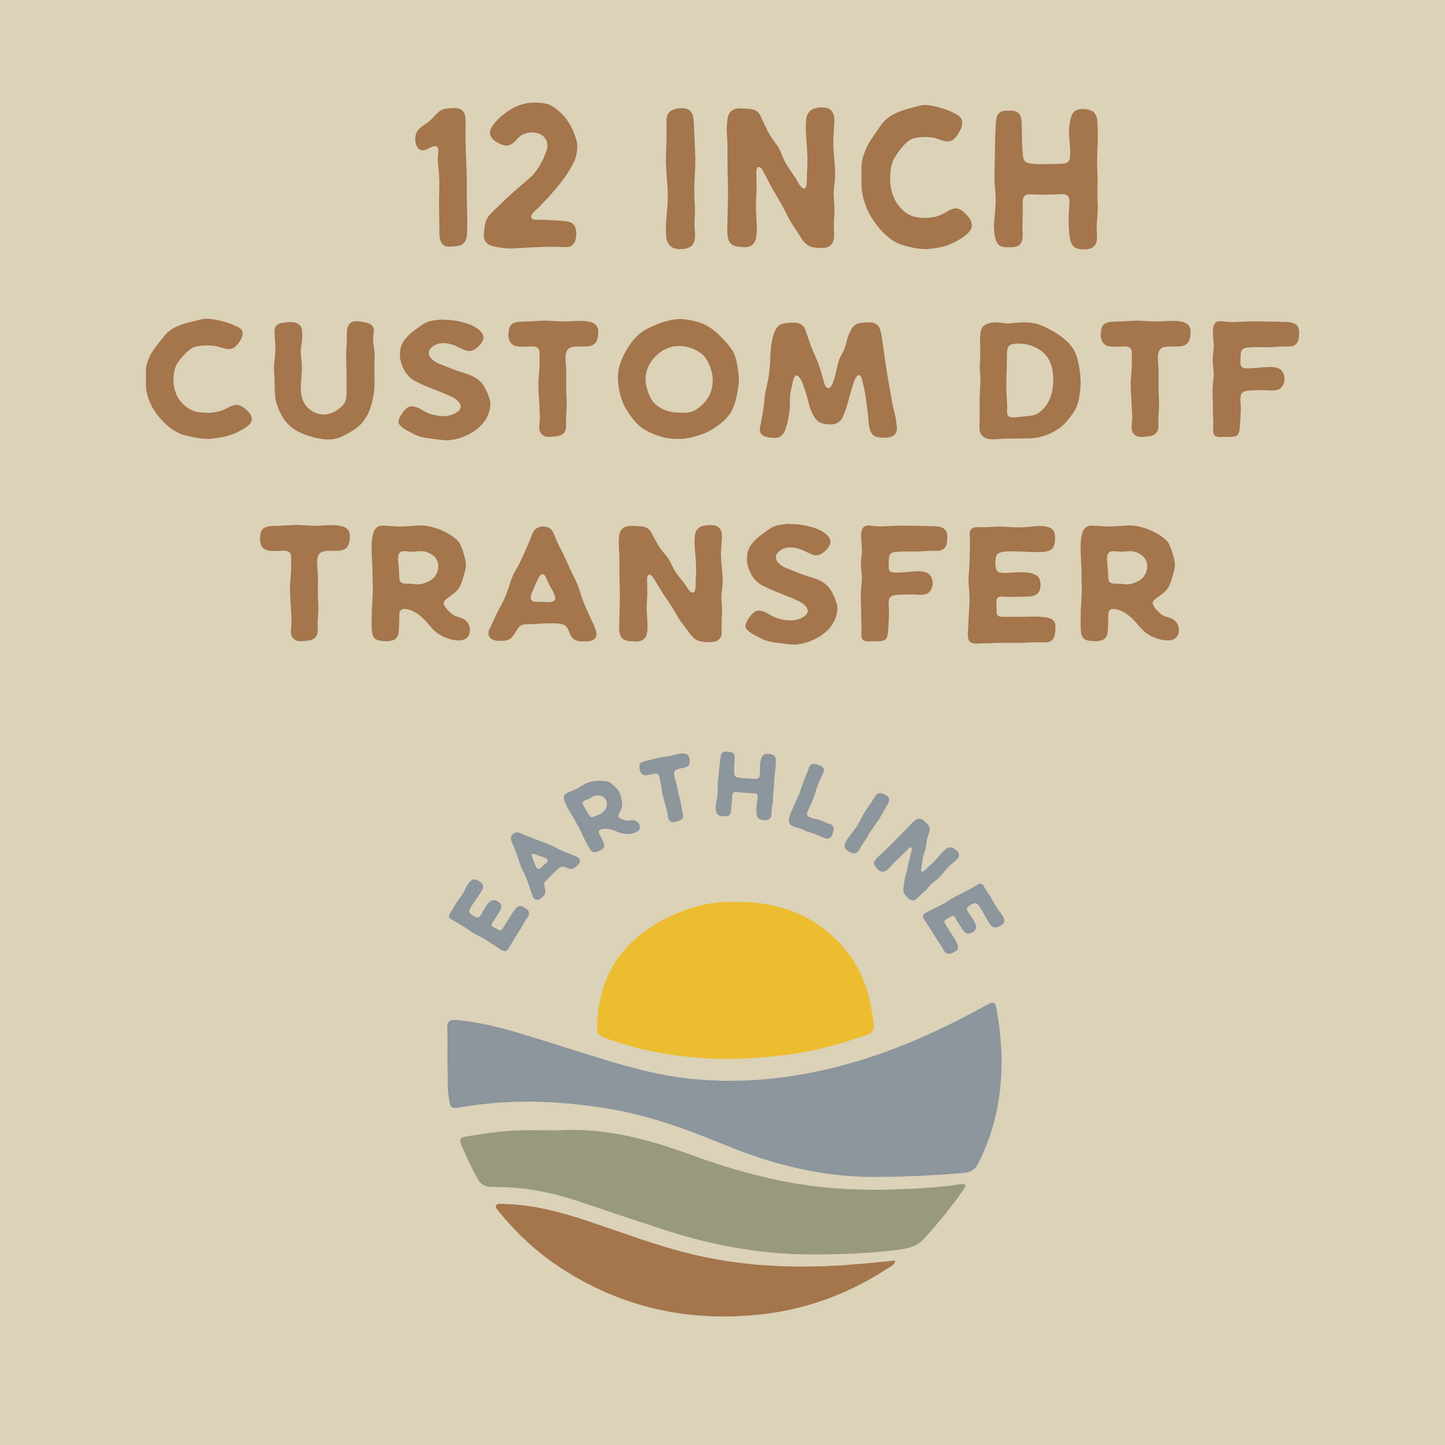 12 inch Custom DTF Transfer